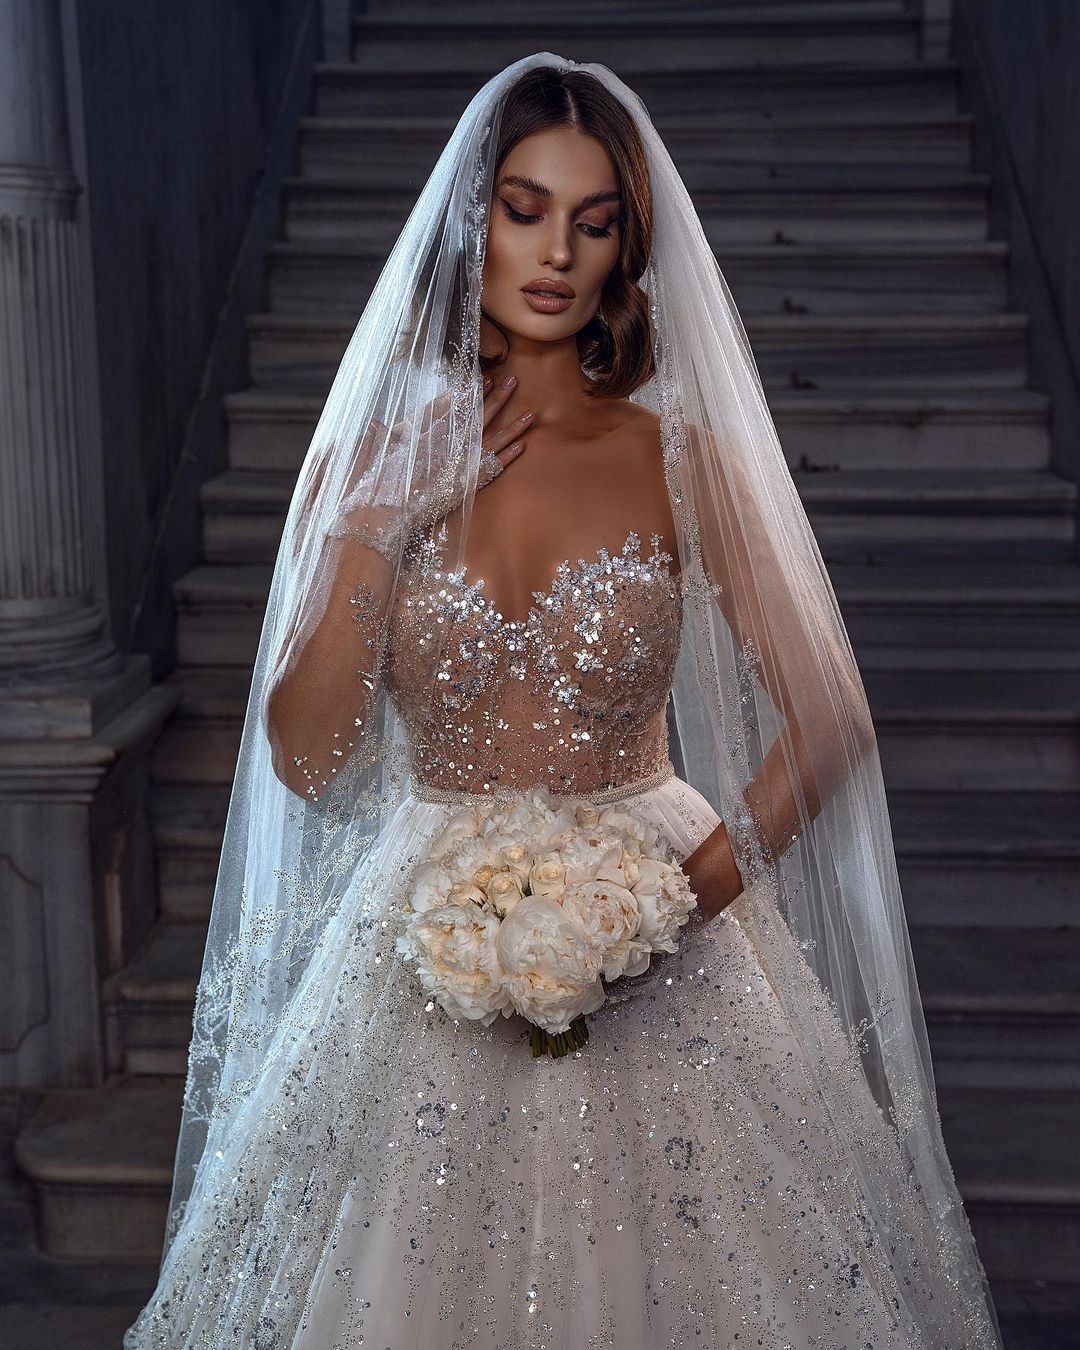 Finden Sie Elegante Brautkleider Glitzer online bei babyonlinedress.de. Hochzeitskleider A Linie Spitze für Sie maßgeschneidert kaufen.